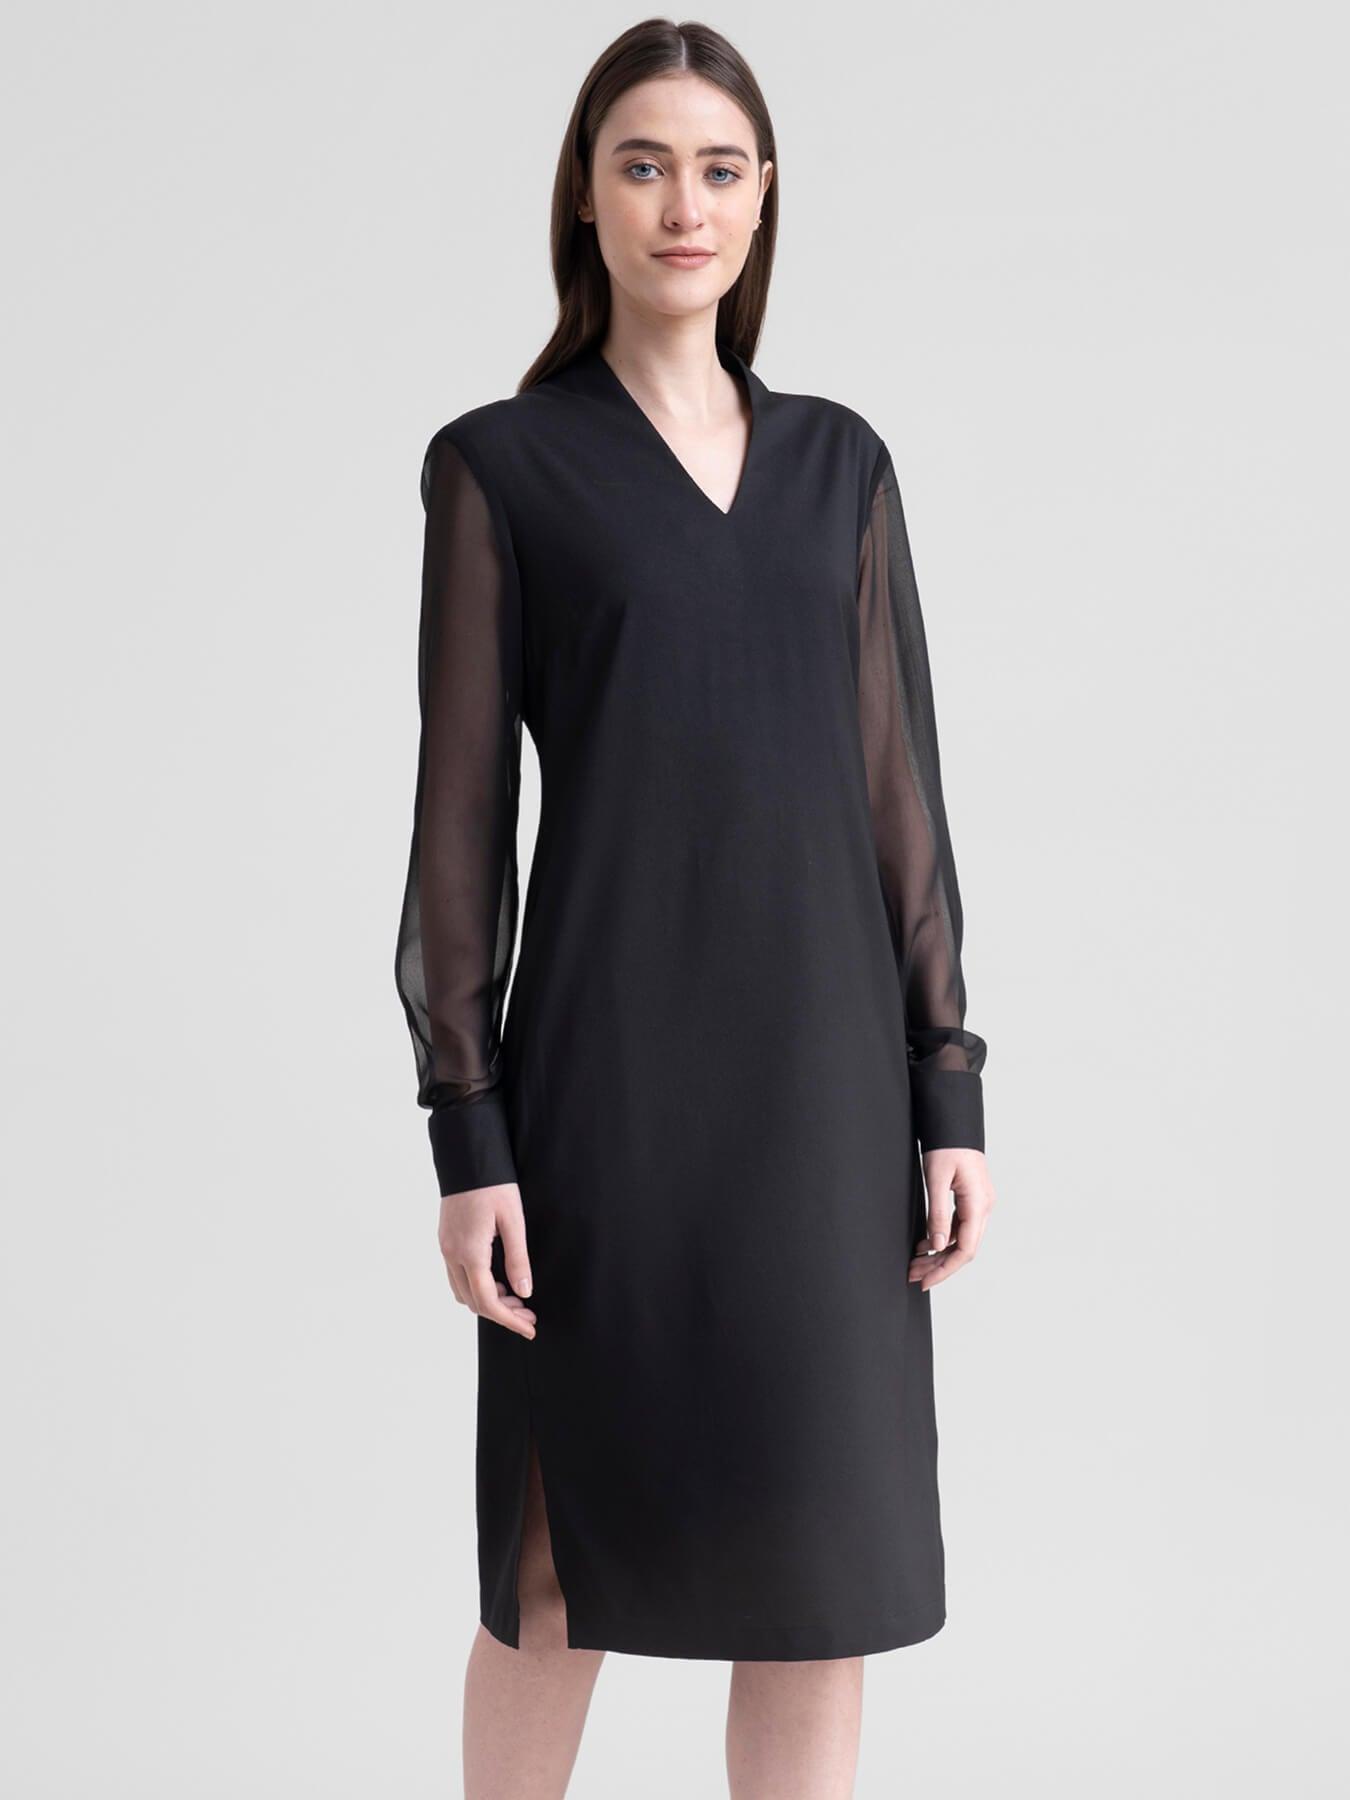 V Neck Shift Dress - Black| Formal Dresses